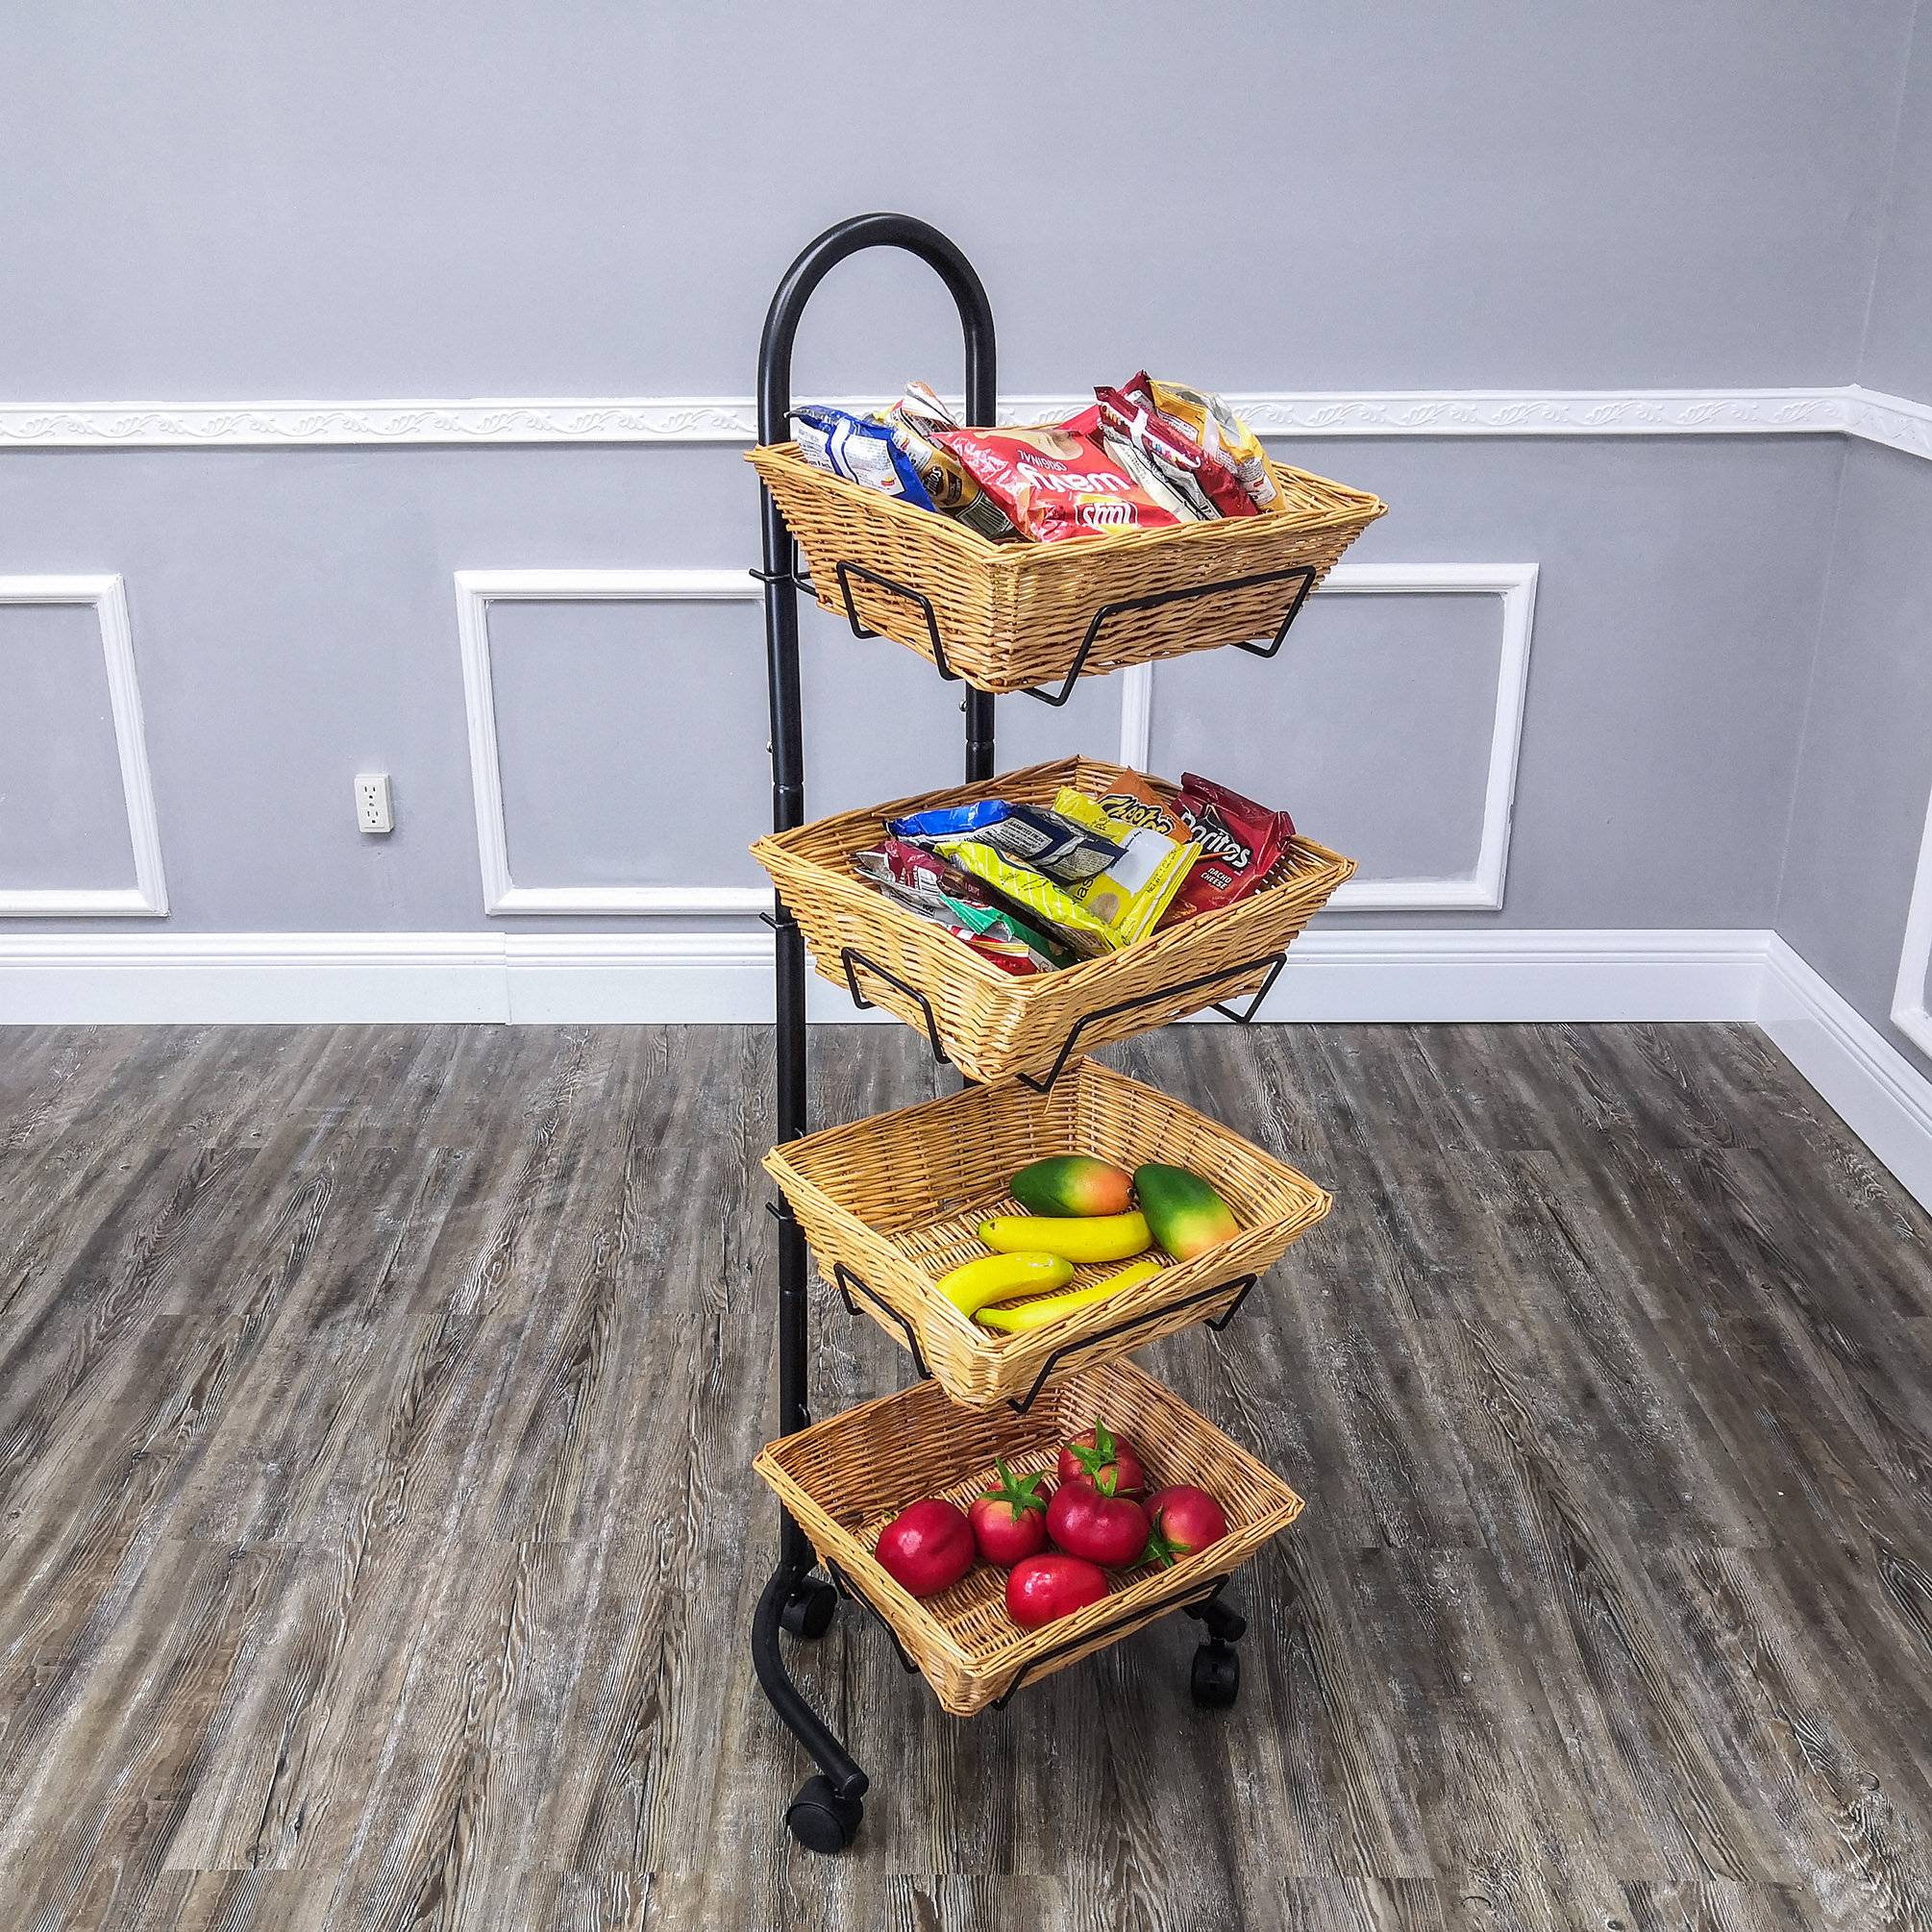 https://assets.wfcdn.com/im/30589527/compr-r85/1955/195589343/rolling-wicker-basket-display-4-tier-market-merchandiser-stand-kitchen-pantry-organizer-on-wheels.jpg